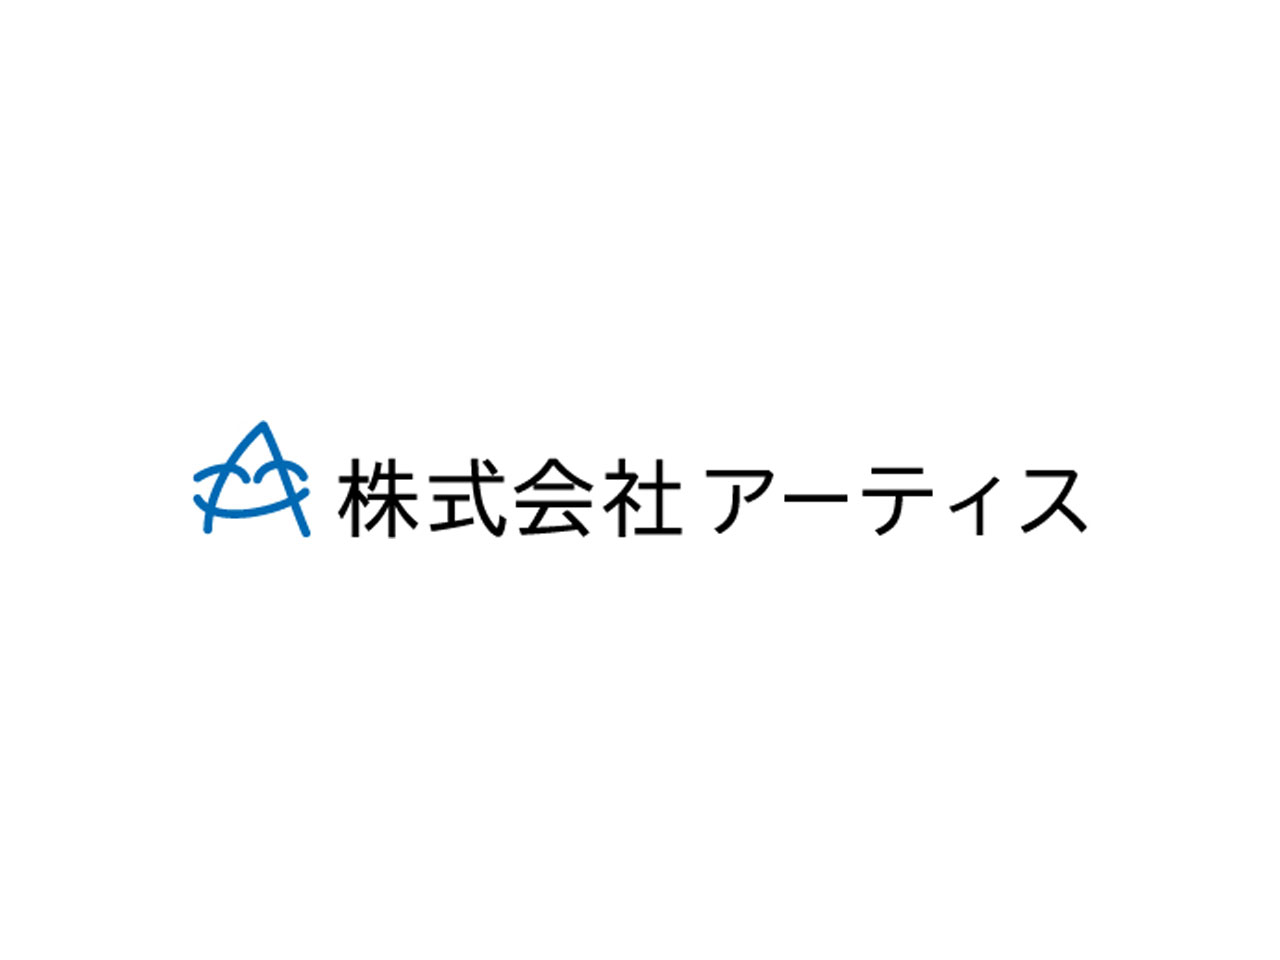 静岡県浜松市にある同社は、ホームページ制作からWebマーケティング、Webコンサルティング、Webシステム開発まで一貫して手掛ける制作会社。